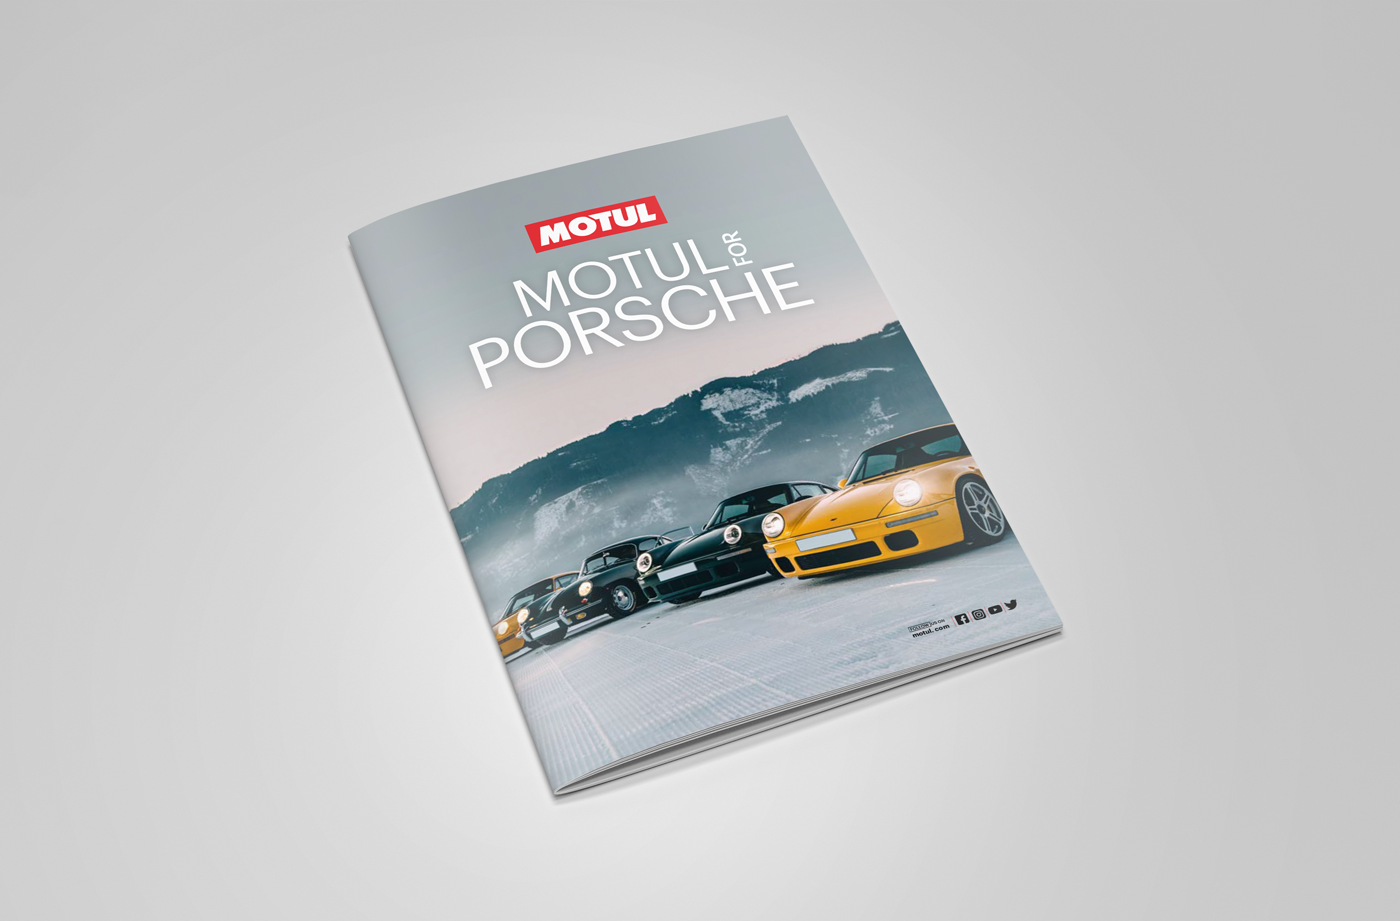 Motul Brochure Porsche cover